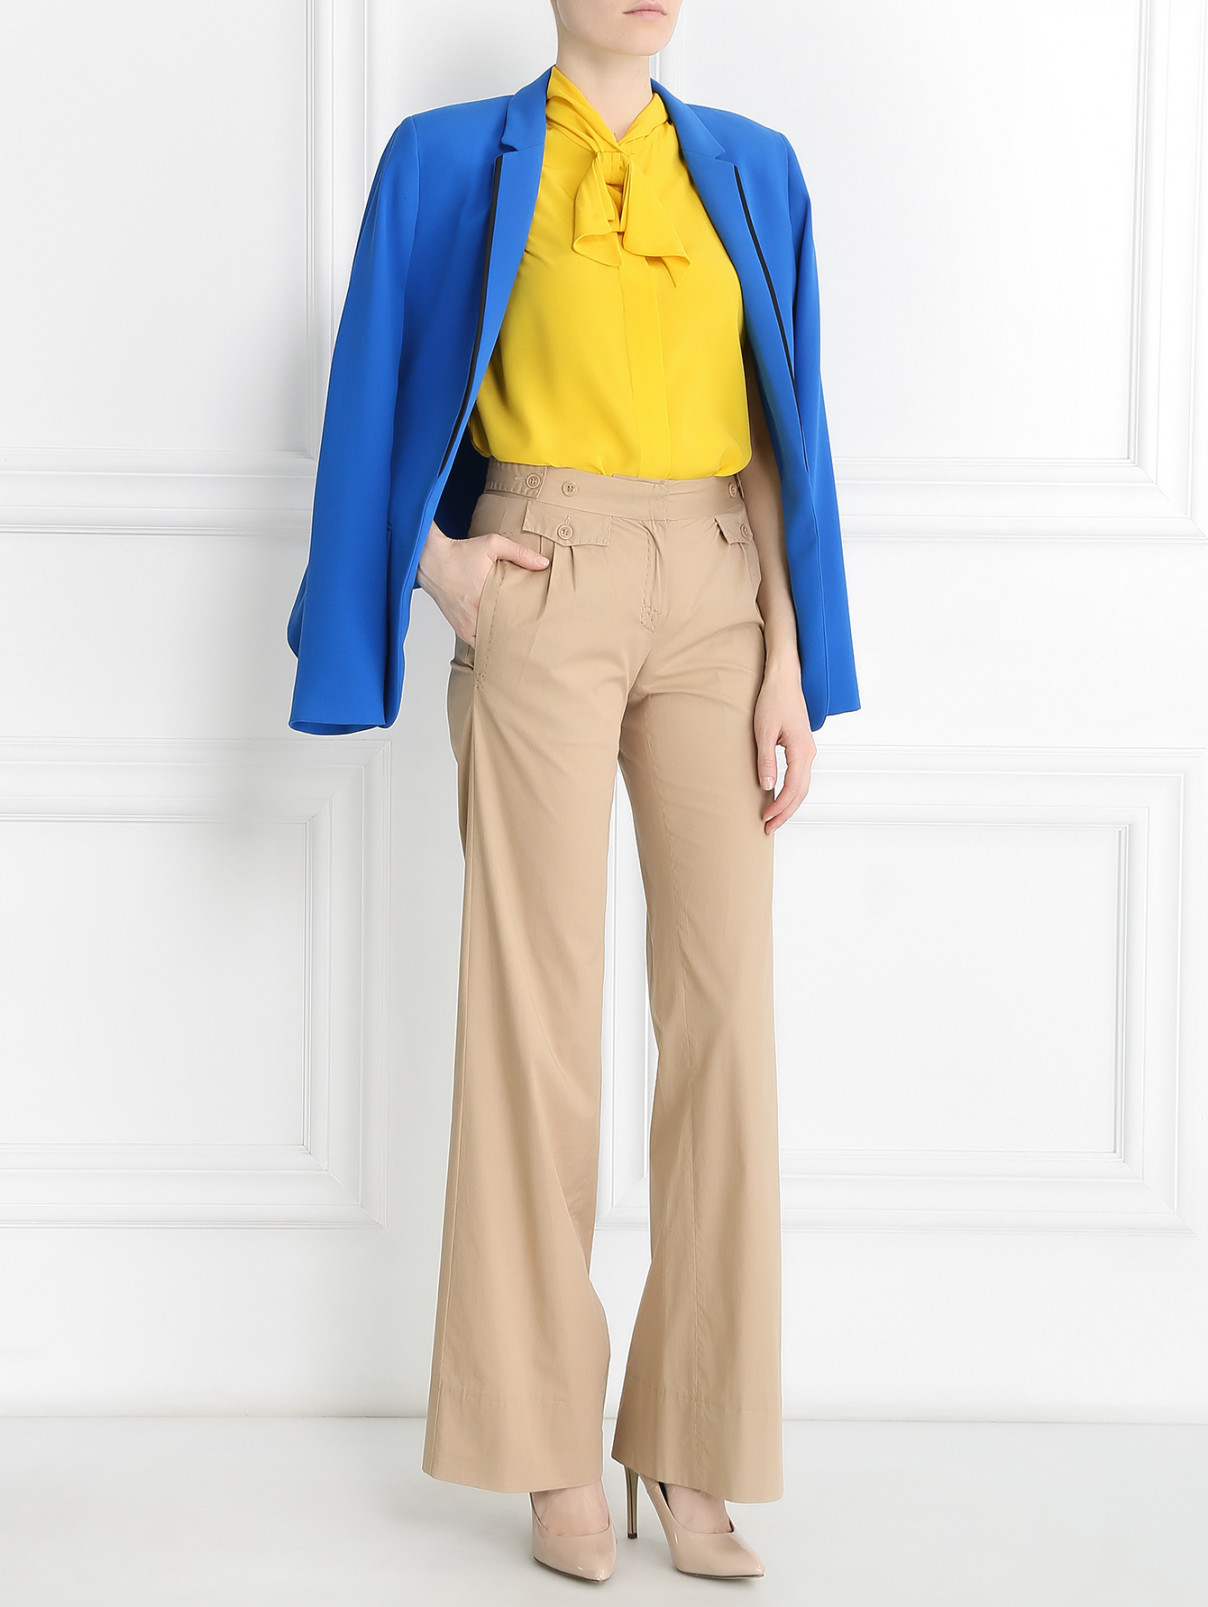 Блуза из шелка Moschino  –  Модель Общий вид  – Цвет:  Желтый